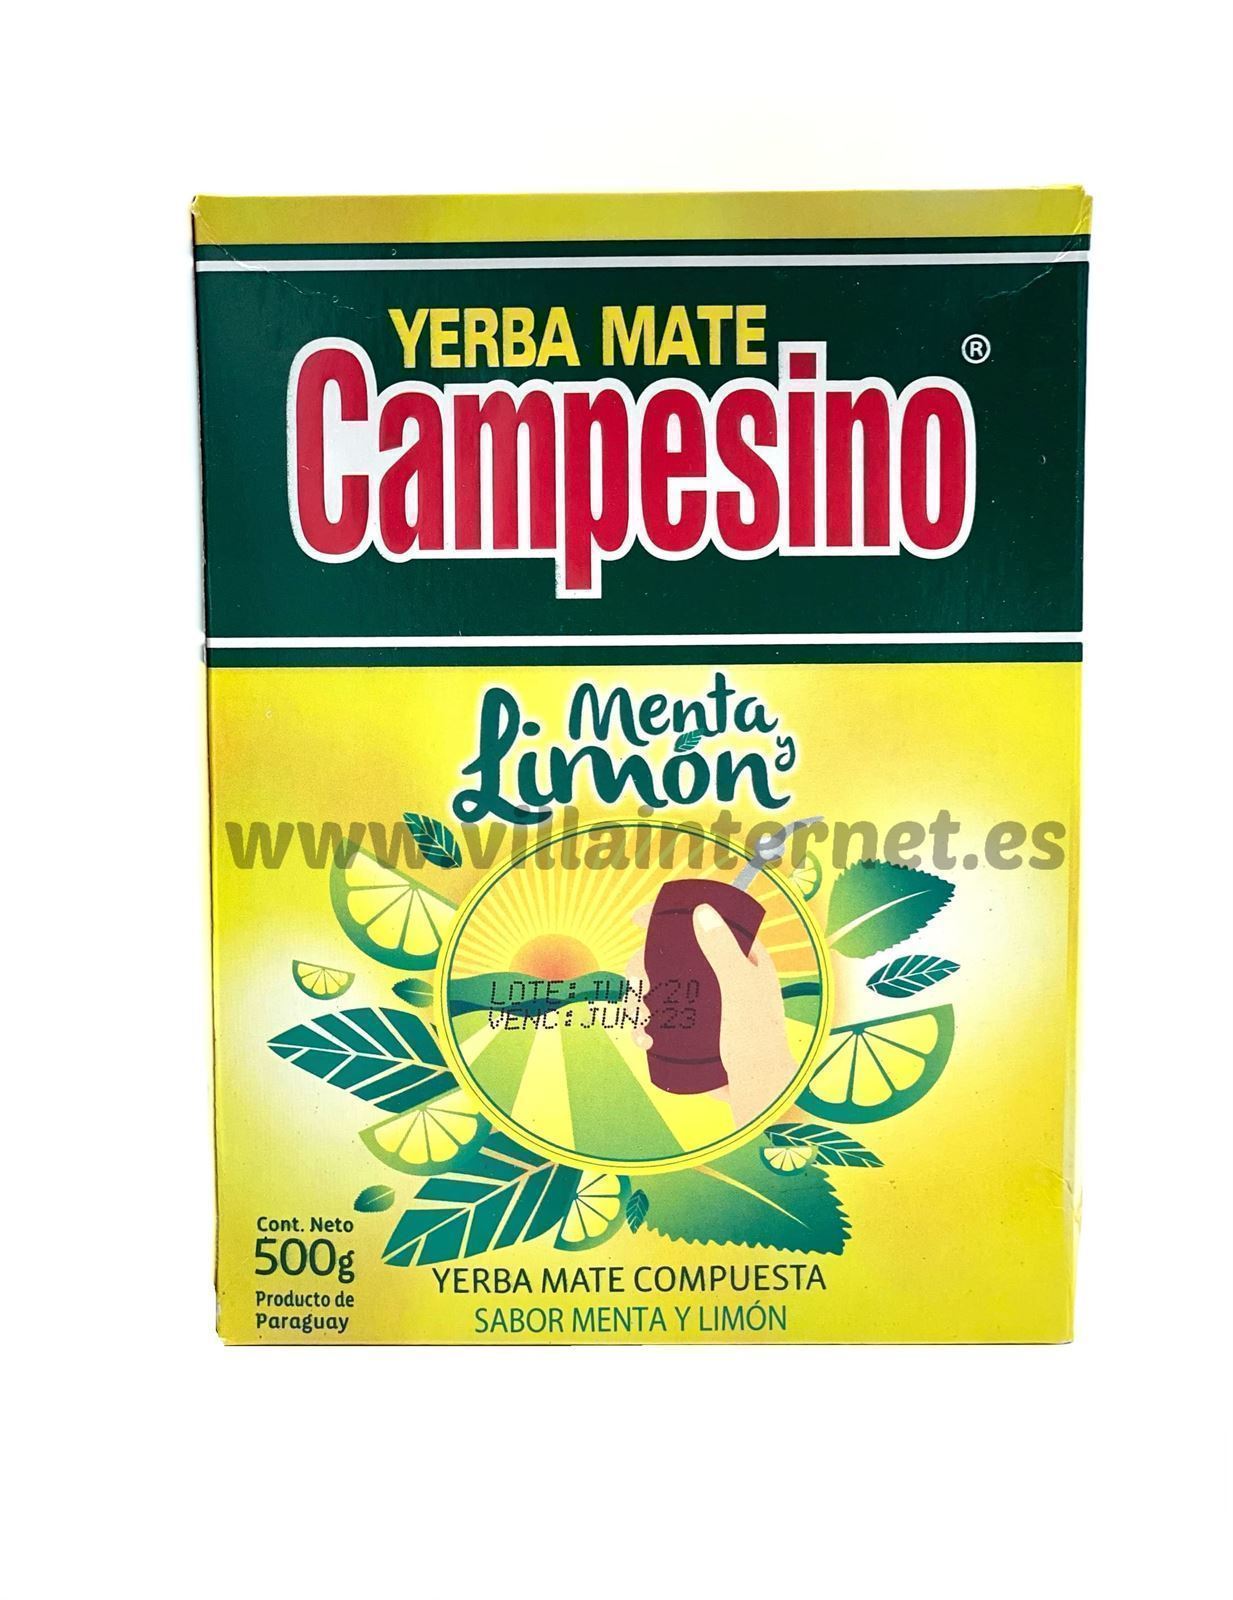 Yerba mate Campesino menta y limón 500g - Imagen 1